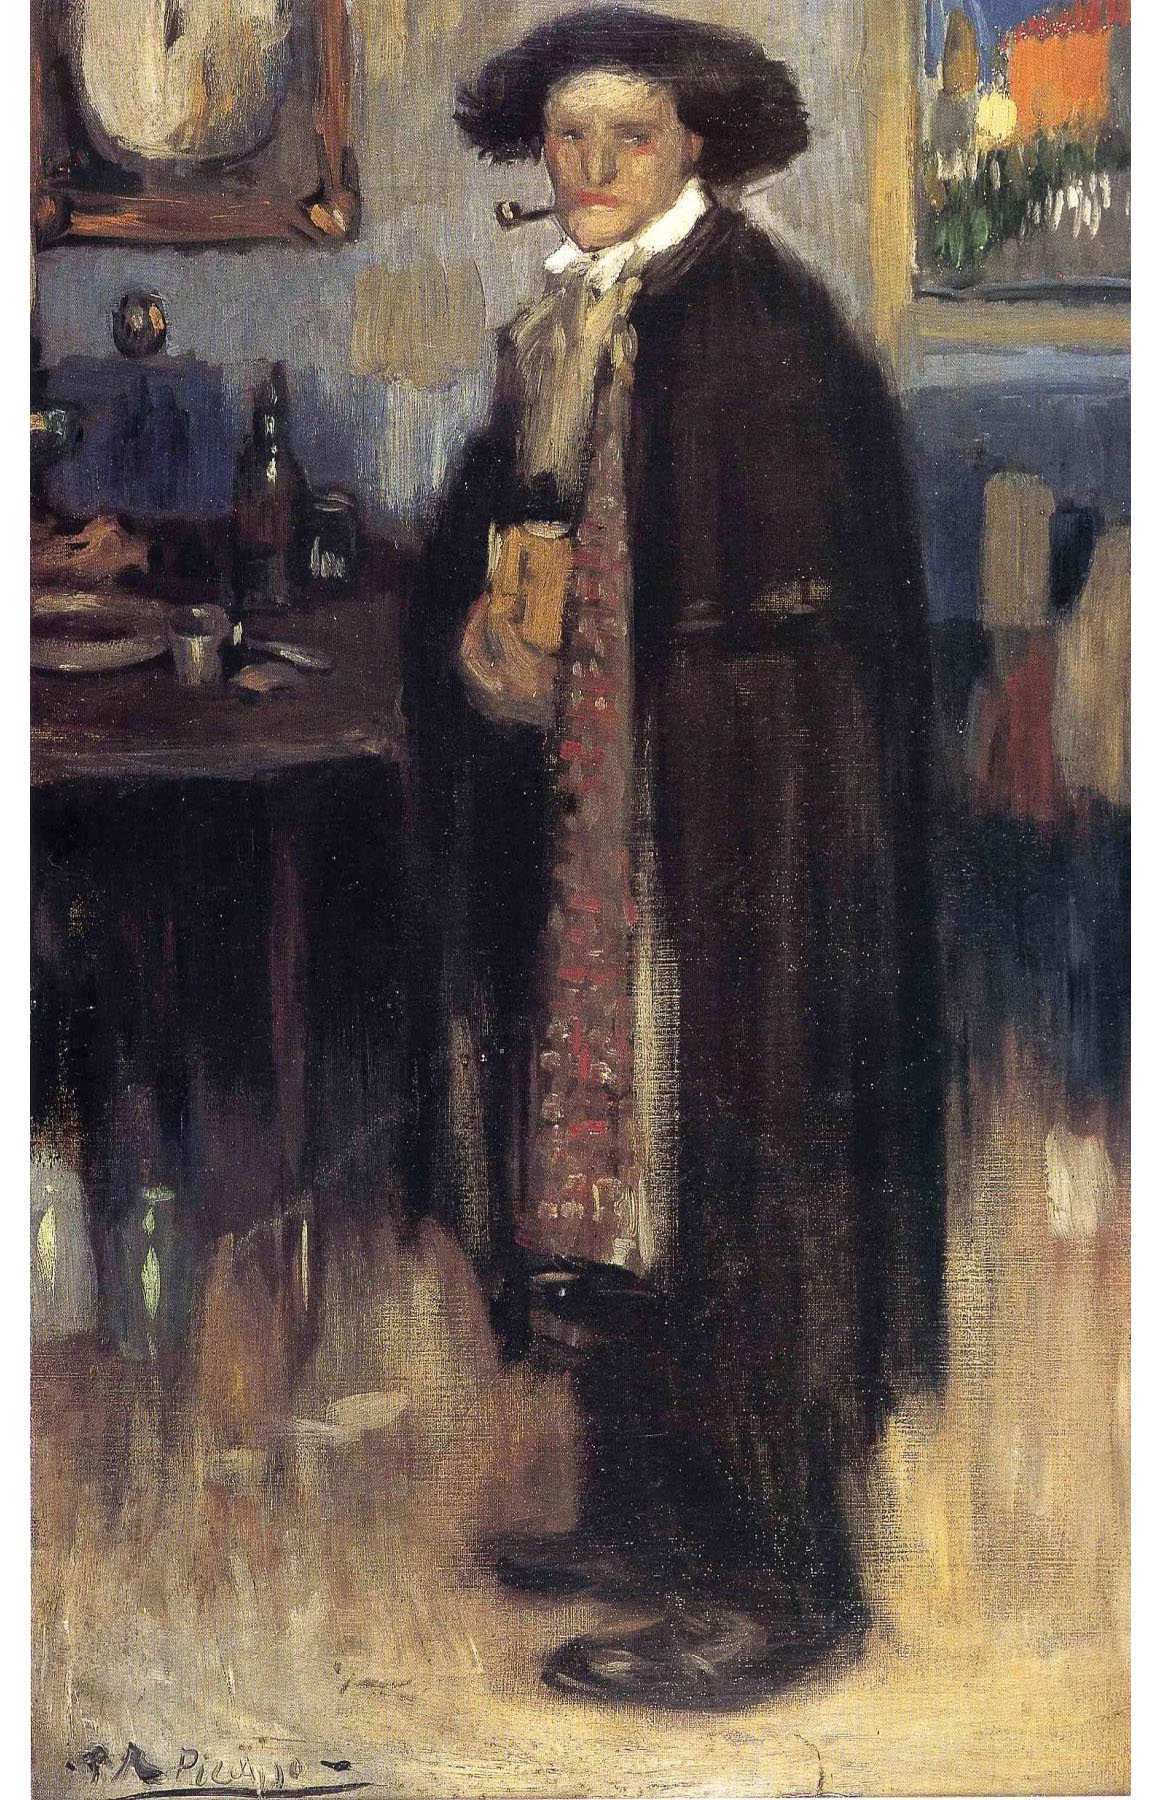 Пабло Пикассо. "Мужчина в испанском плаще". 1900. Частная коллекция.